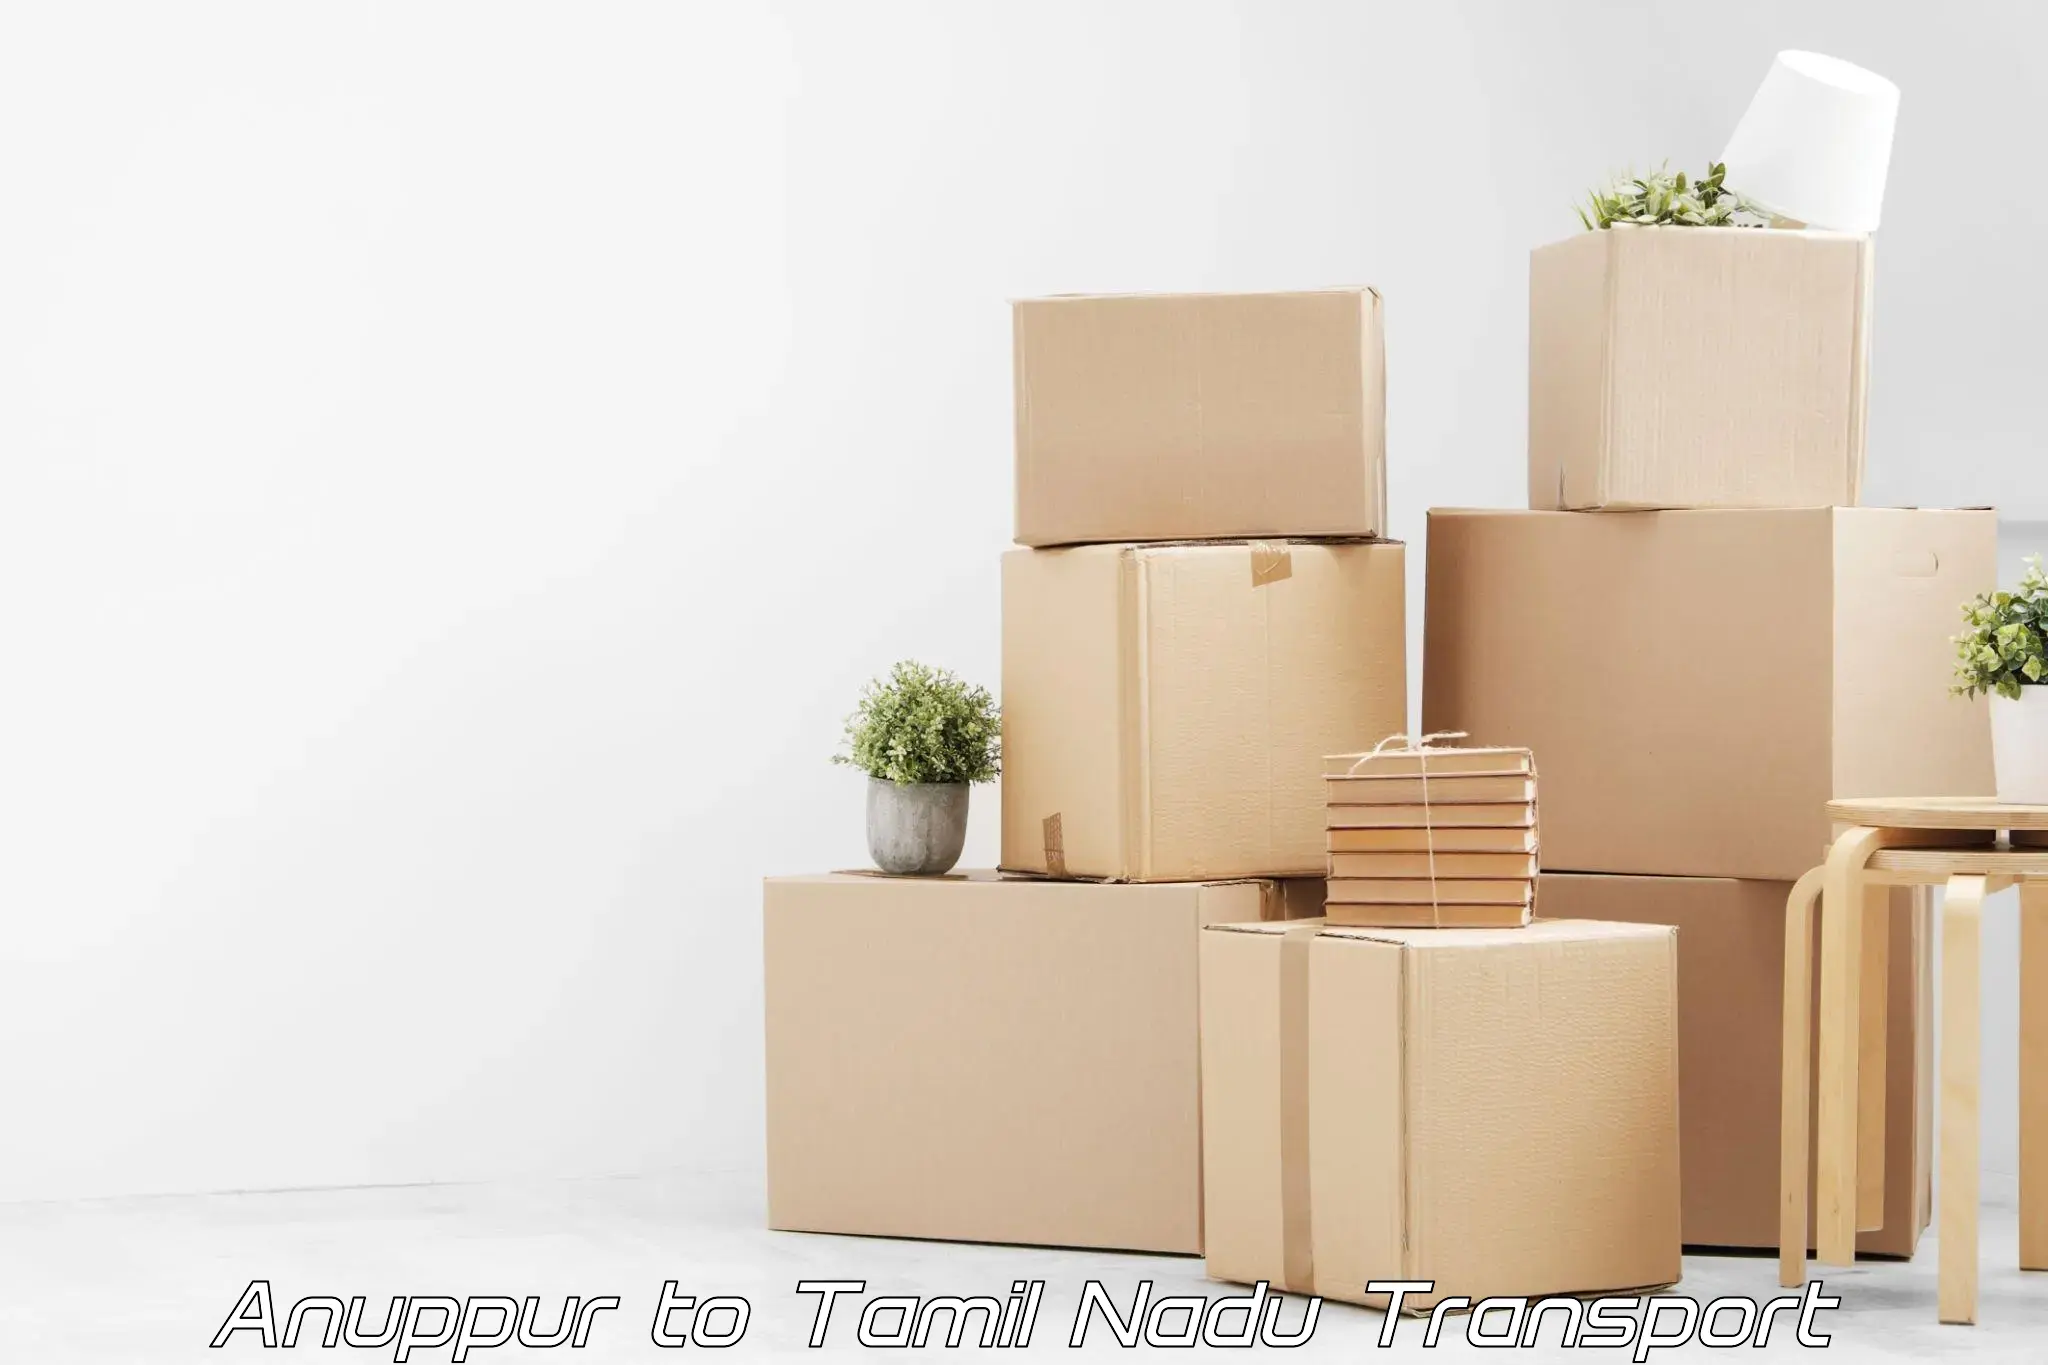 Furniture transport service Anuppur to Cuddalore